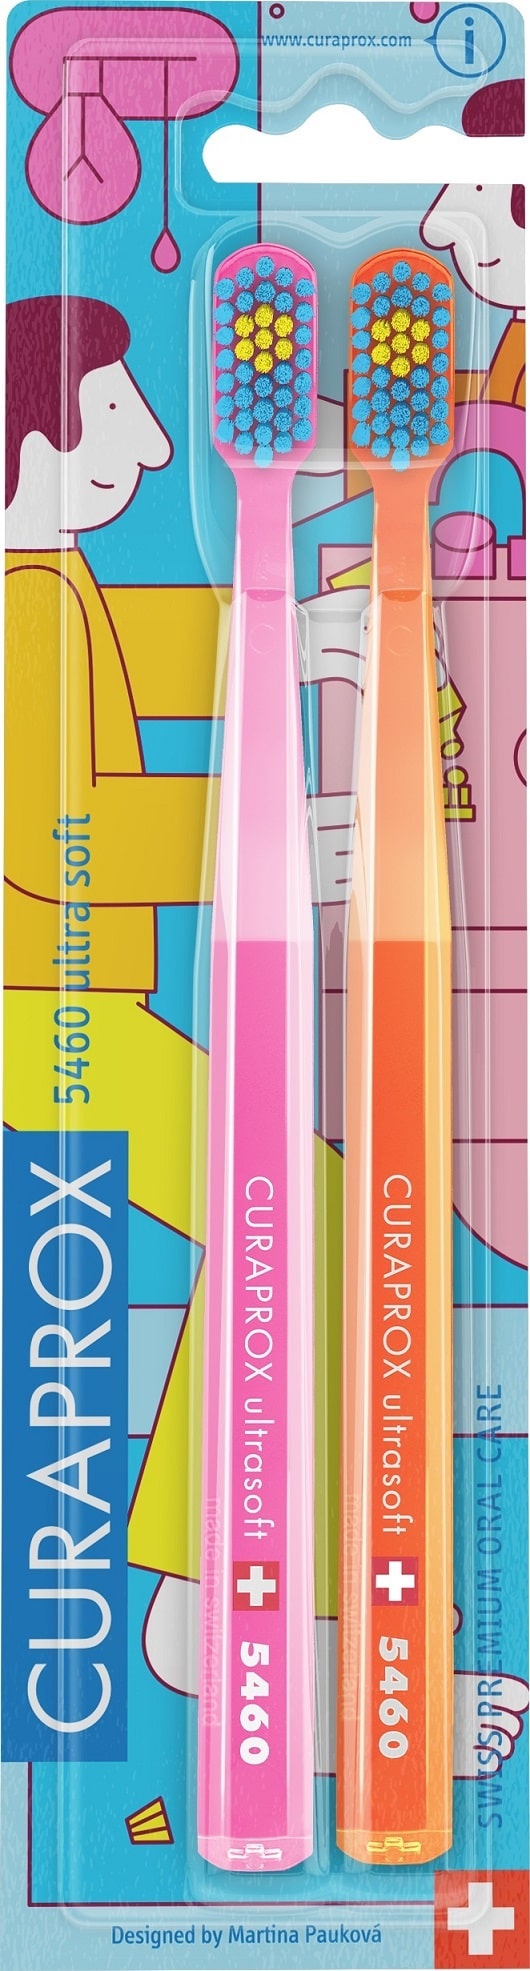 Купить Curaprox Набор зубных щеток CS Duo Bathroom Ultra Soft, 2 шт (Curaprox, Мануальные зубные щетки)